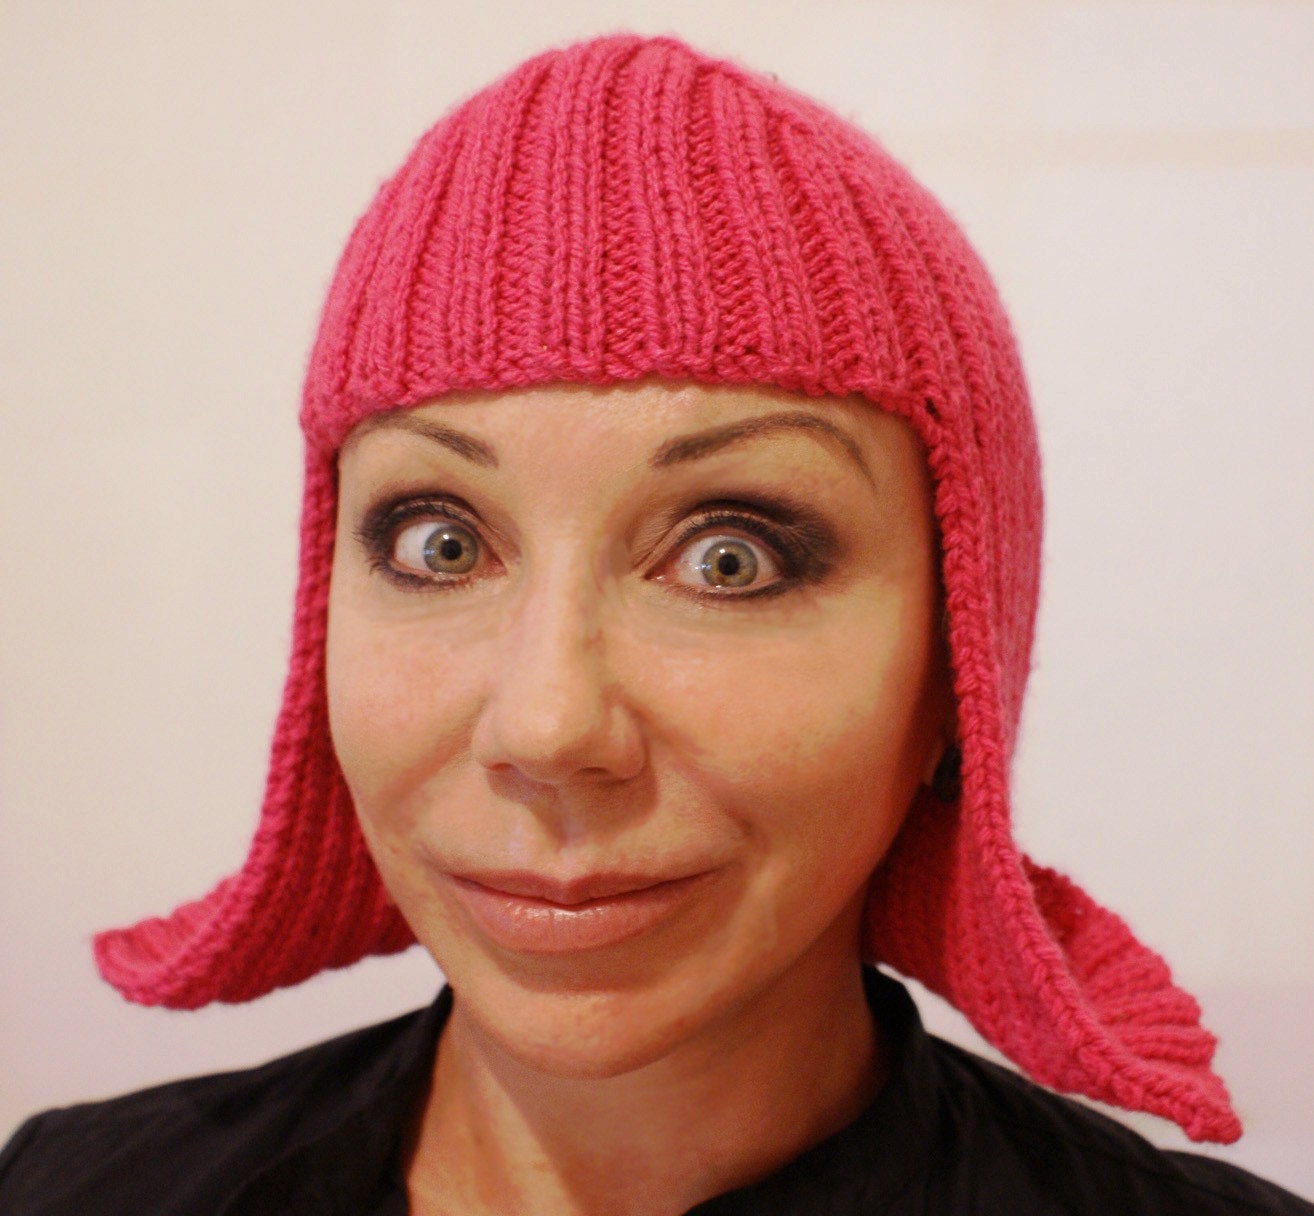 Wild Pink Wig Hat Beanie in 100 percent wool